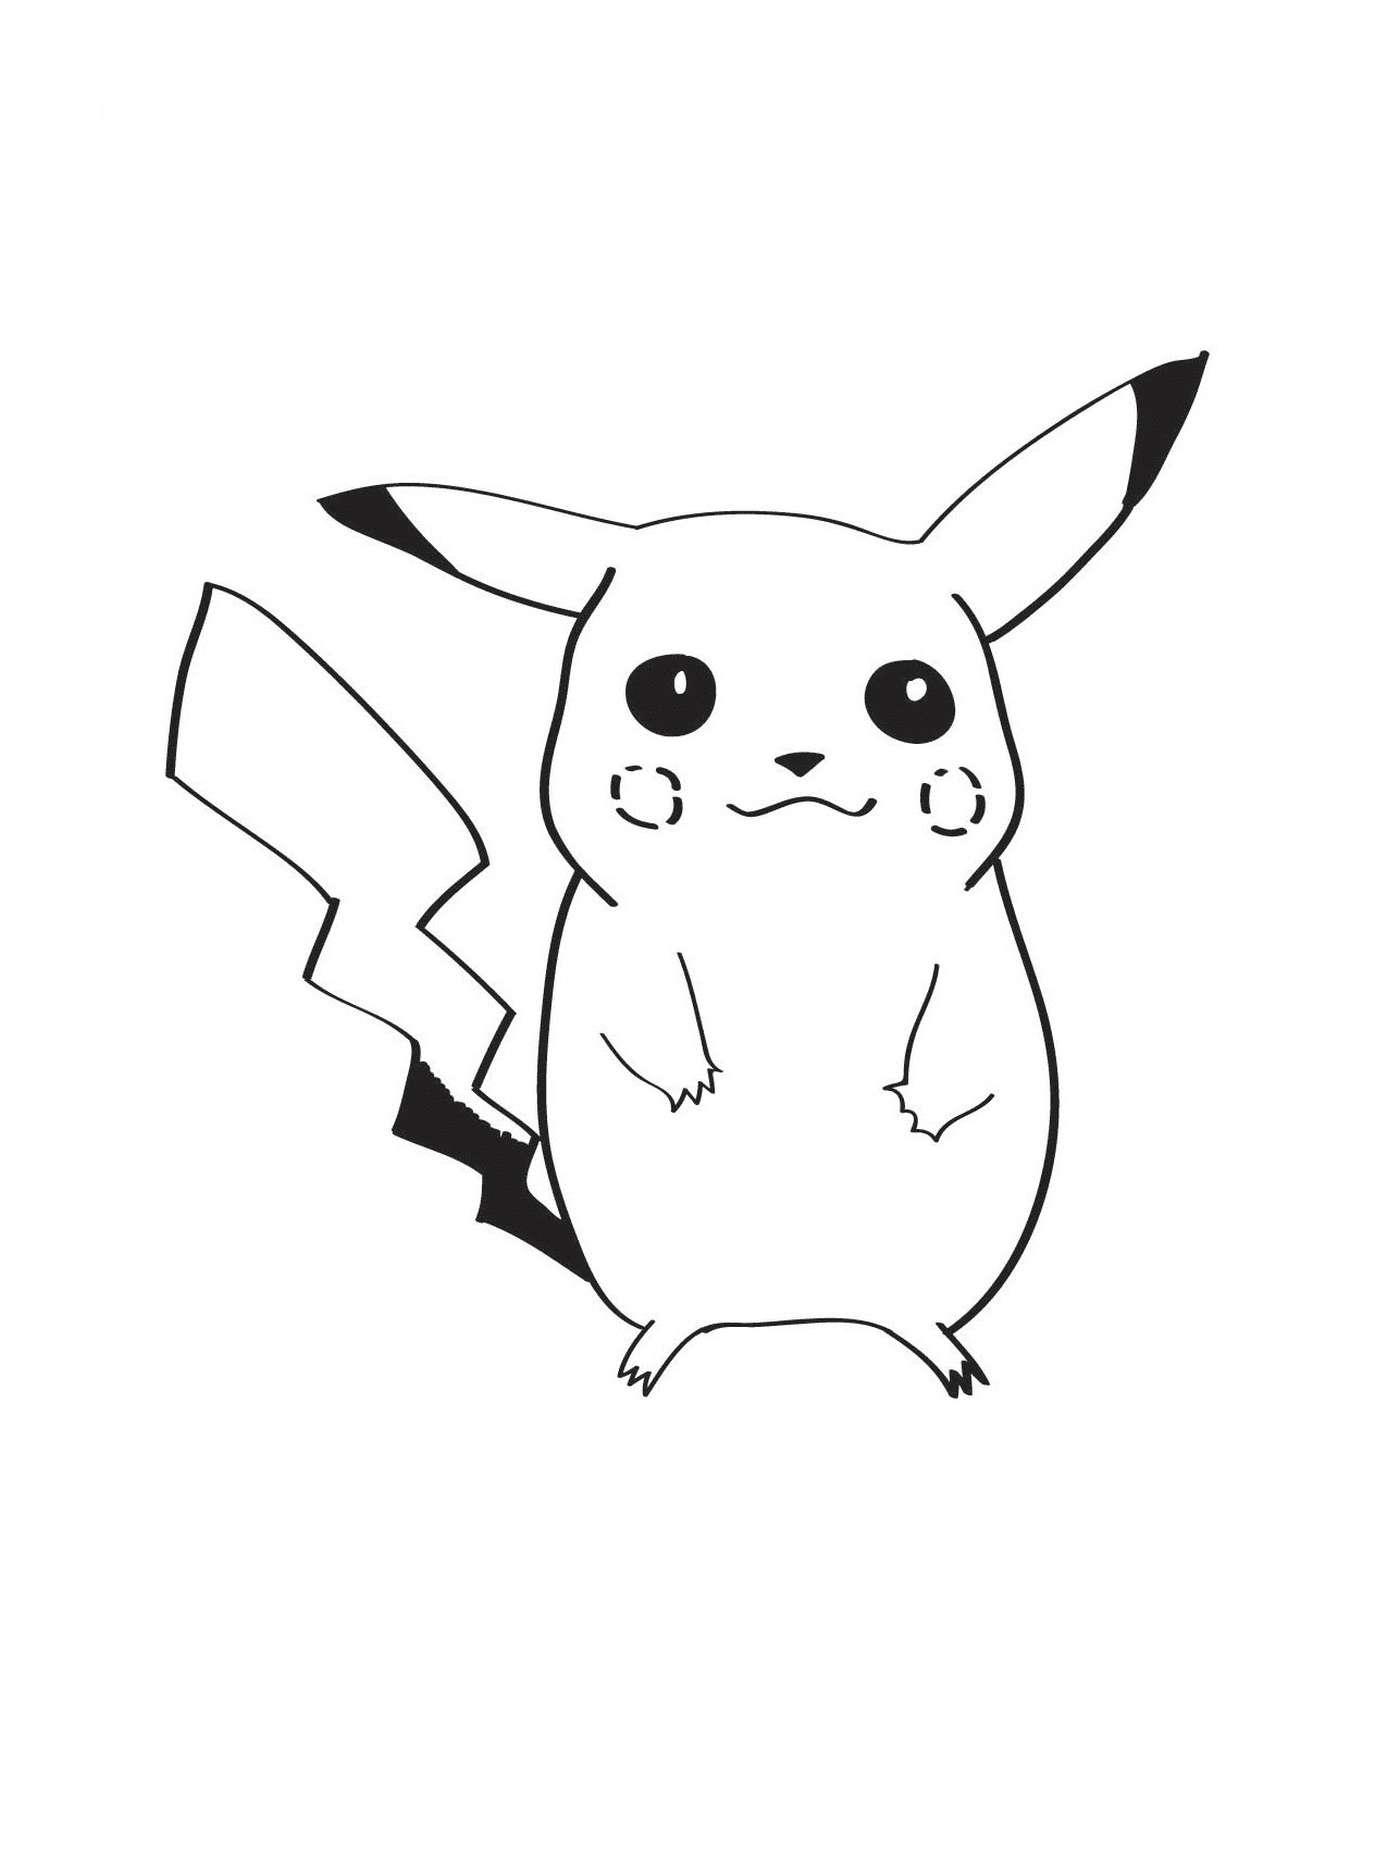  Pikachu, pequena criatura adorável 